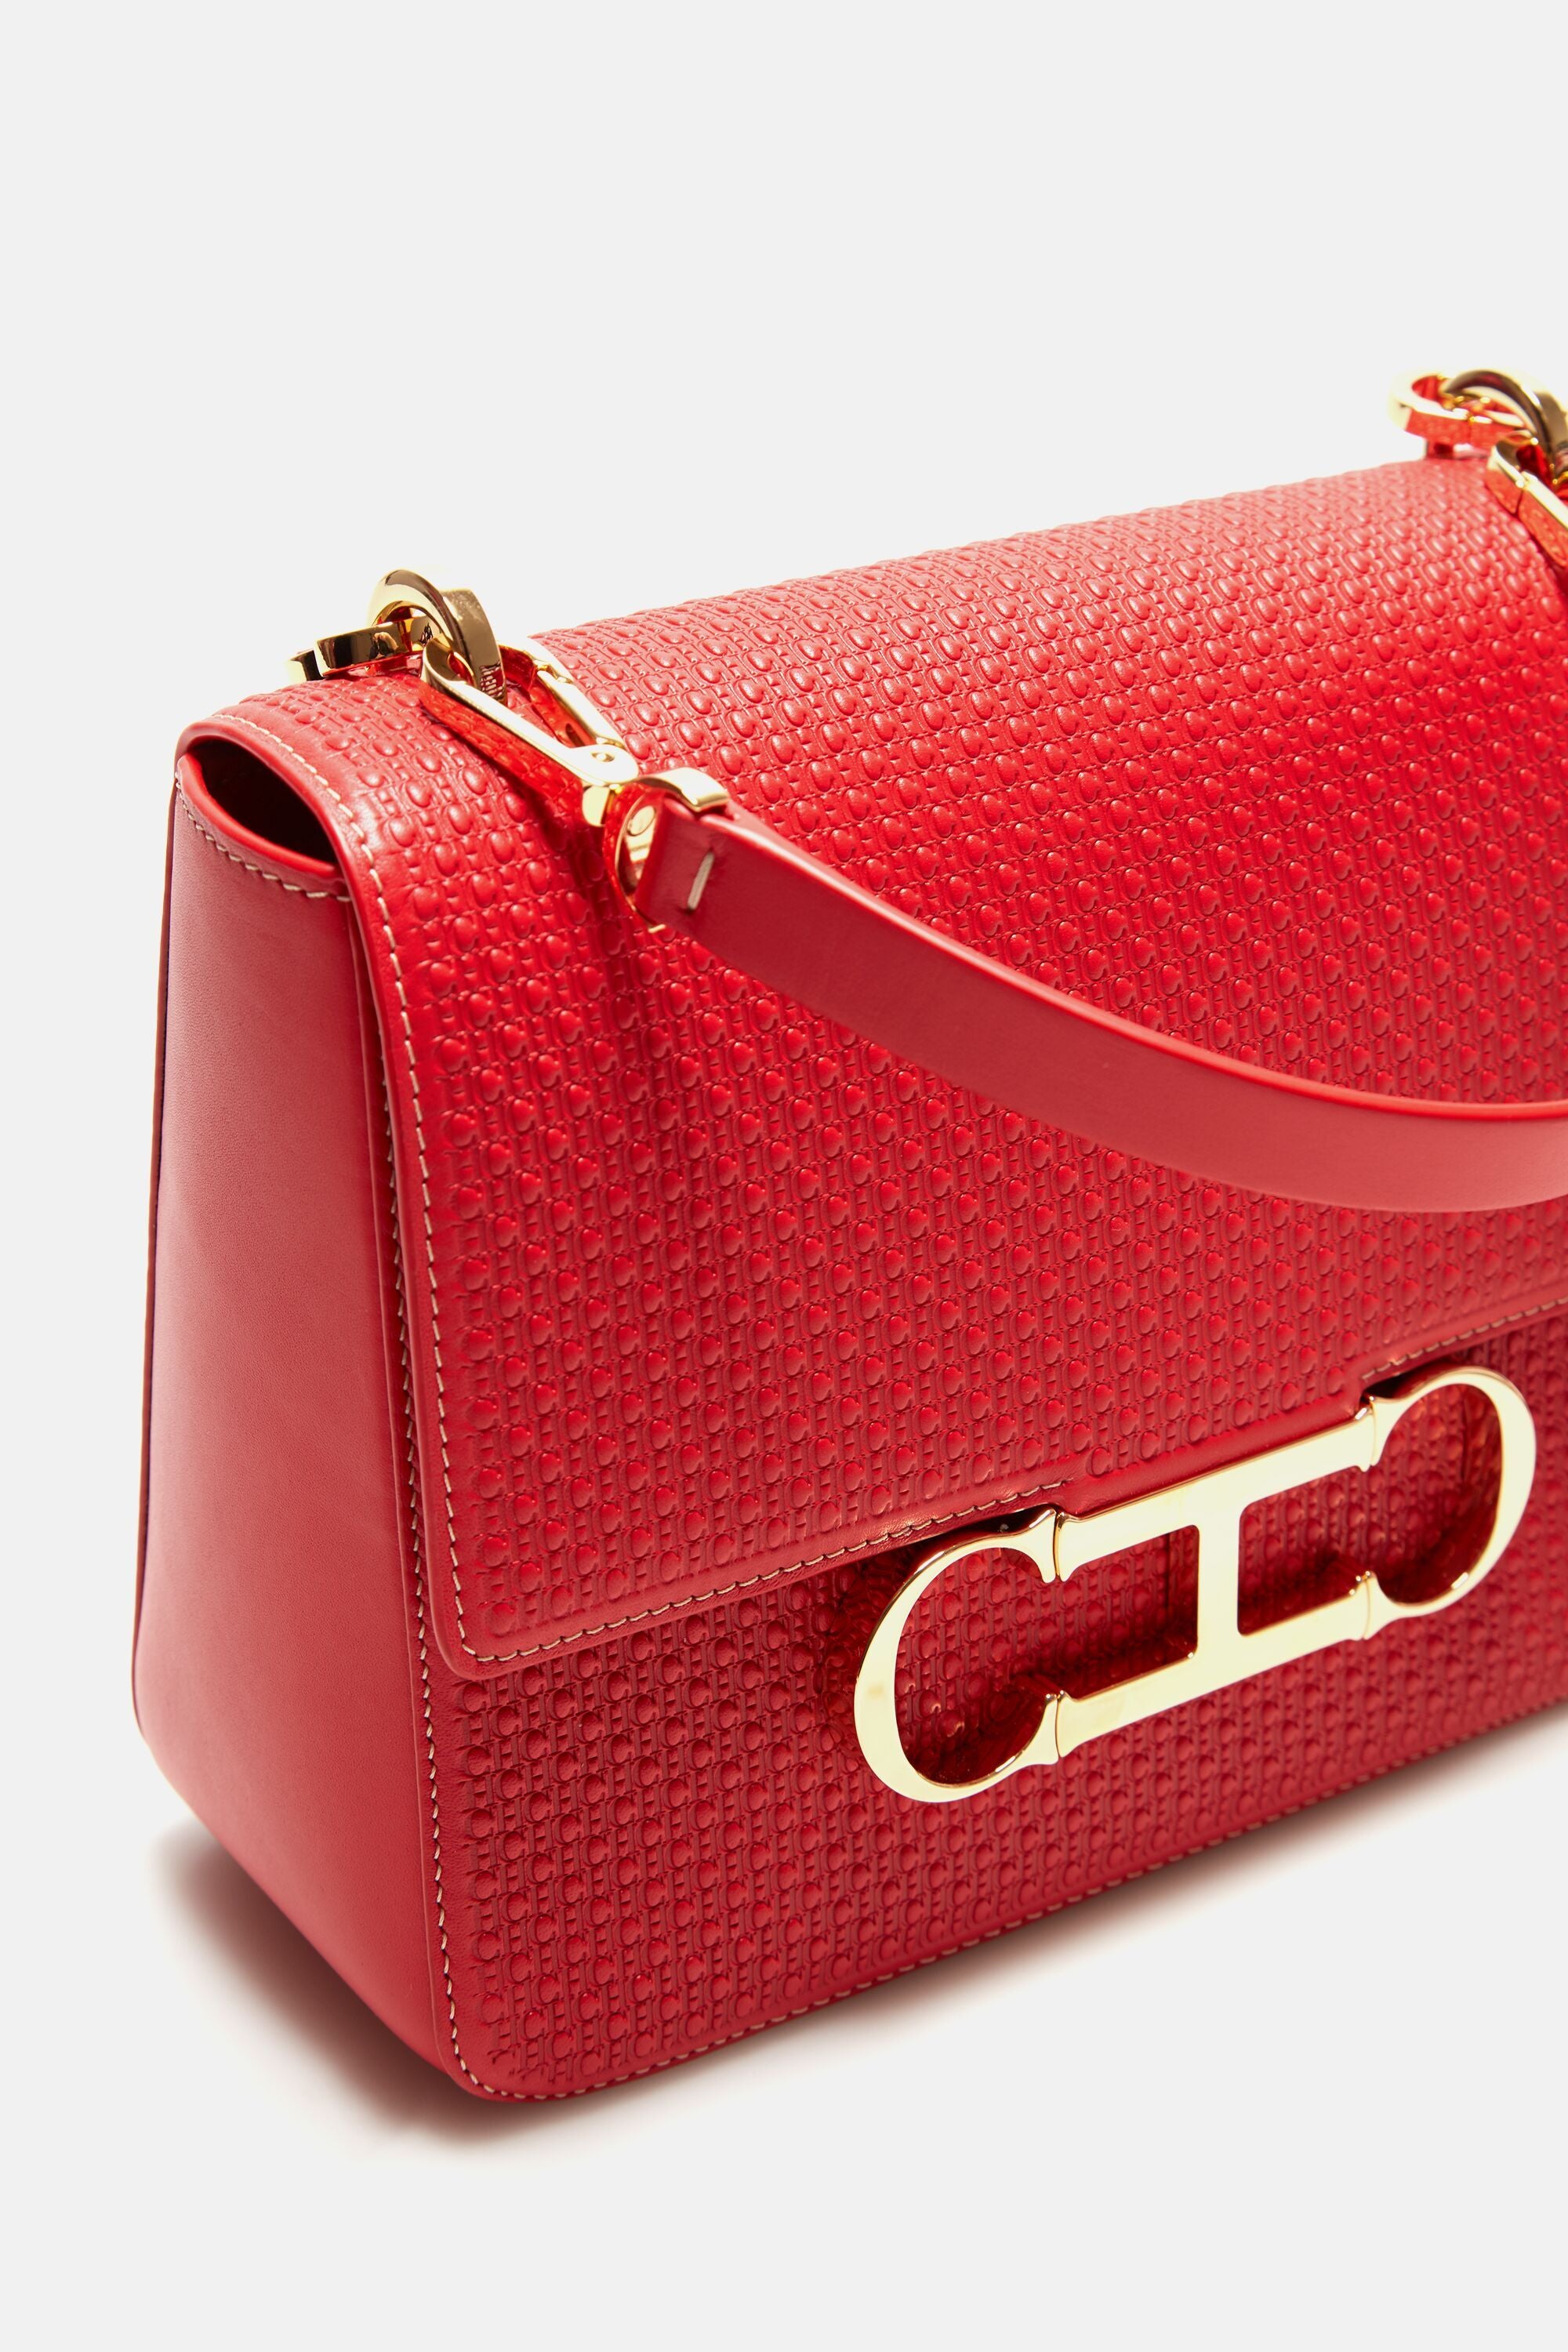 Initials Insignia Satchel  Medium handbag red - CH Carolina Herrera Italy